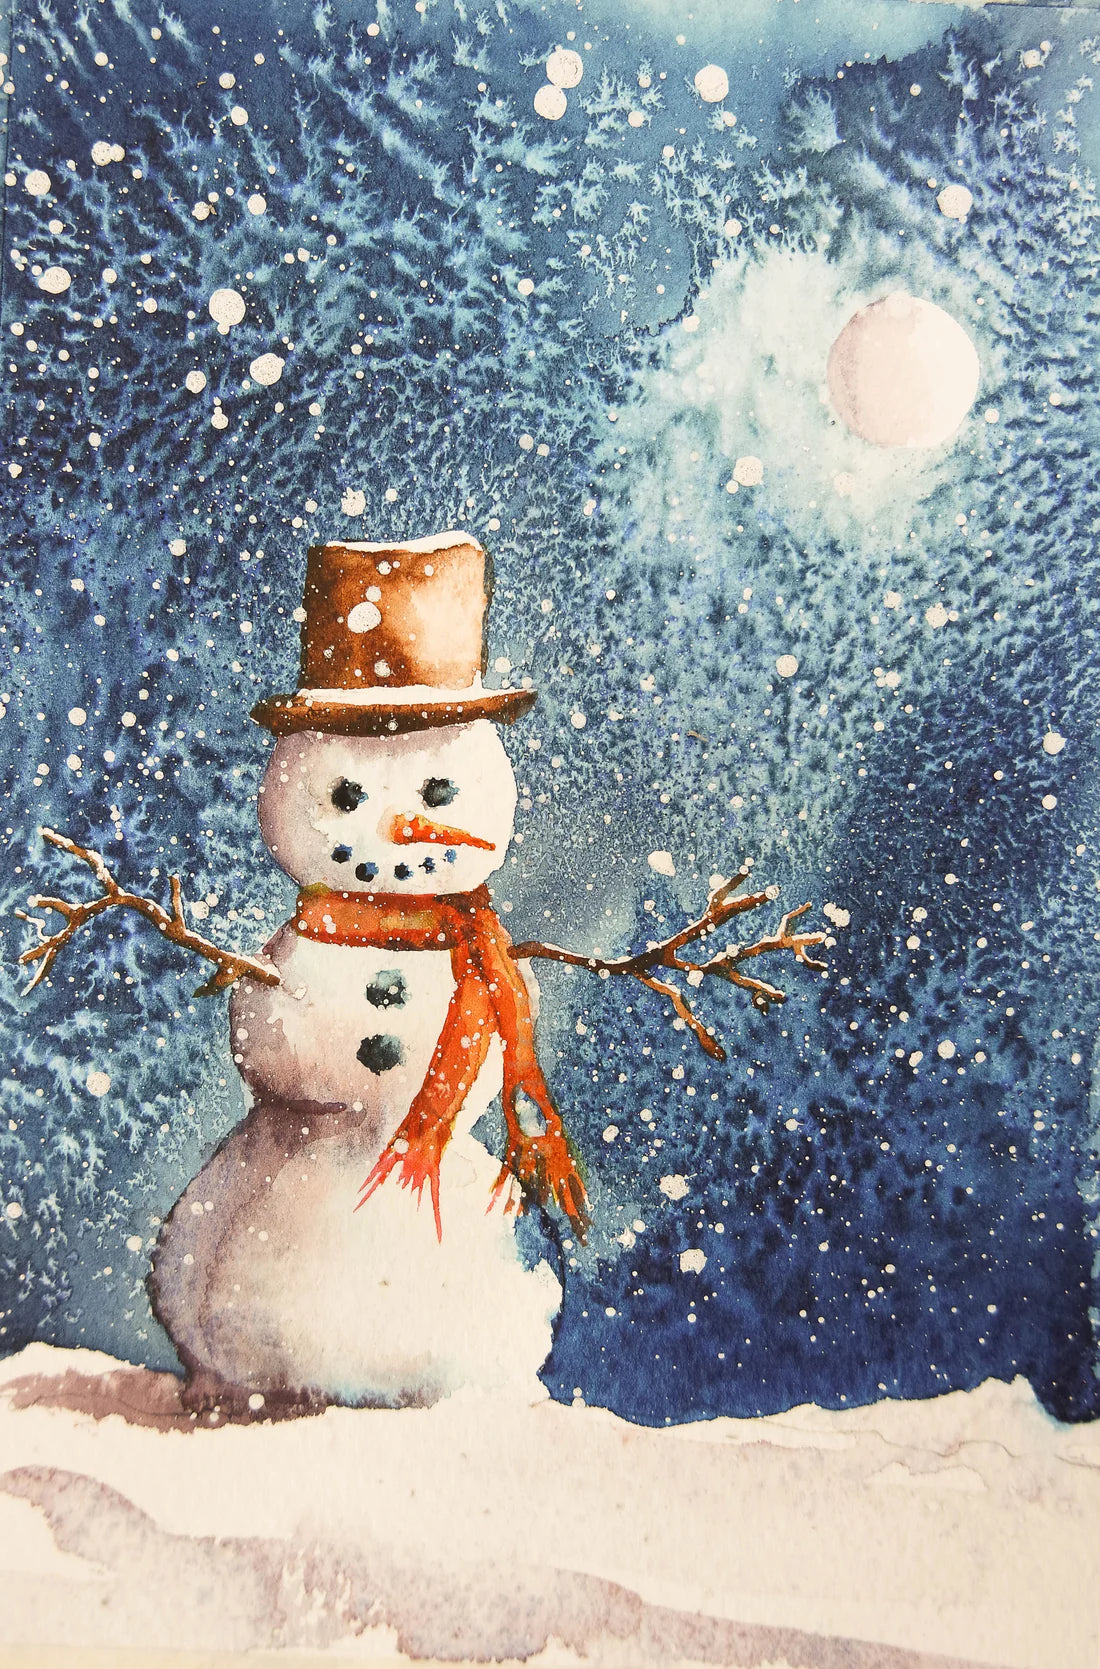 A Christmas Snowman